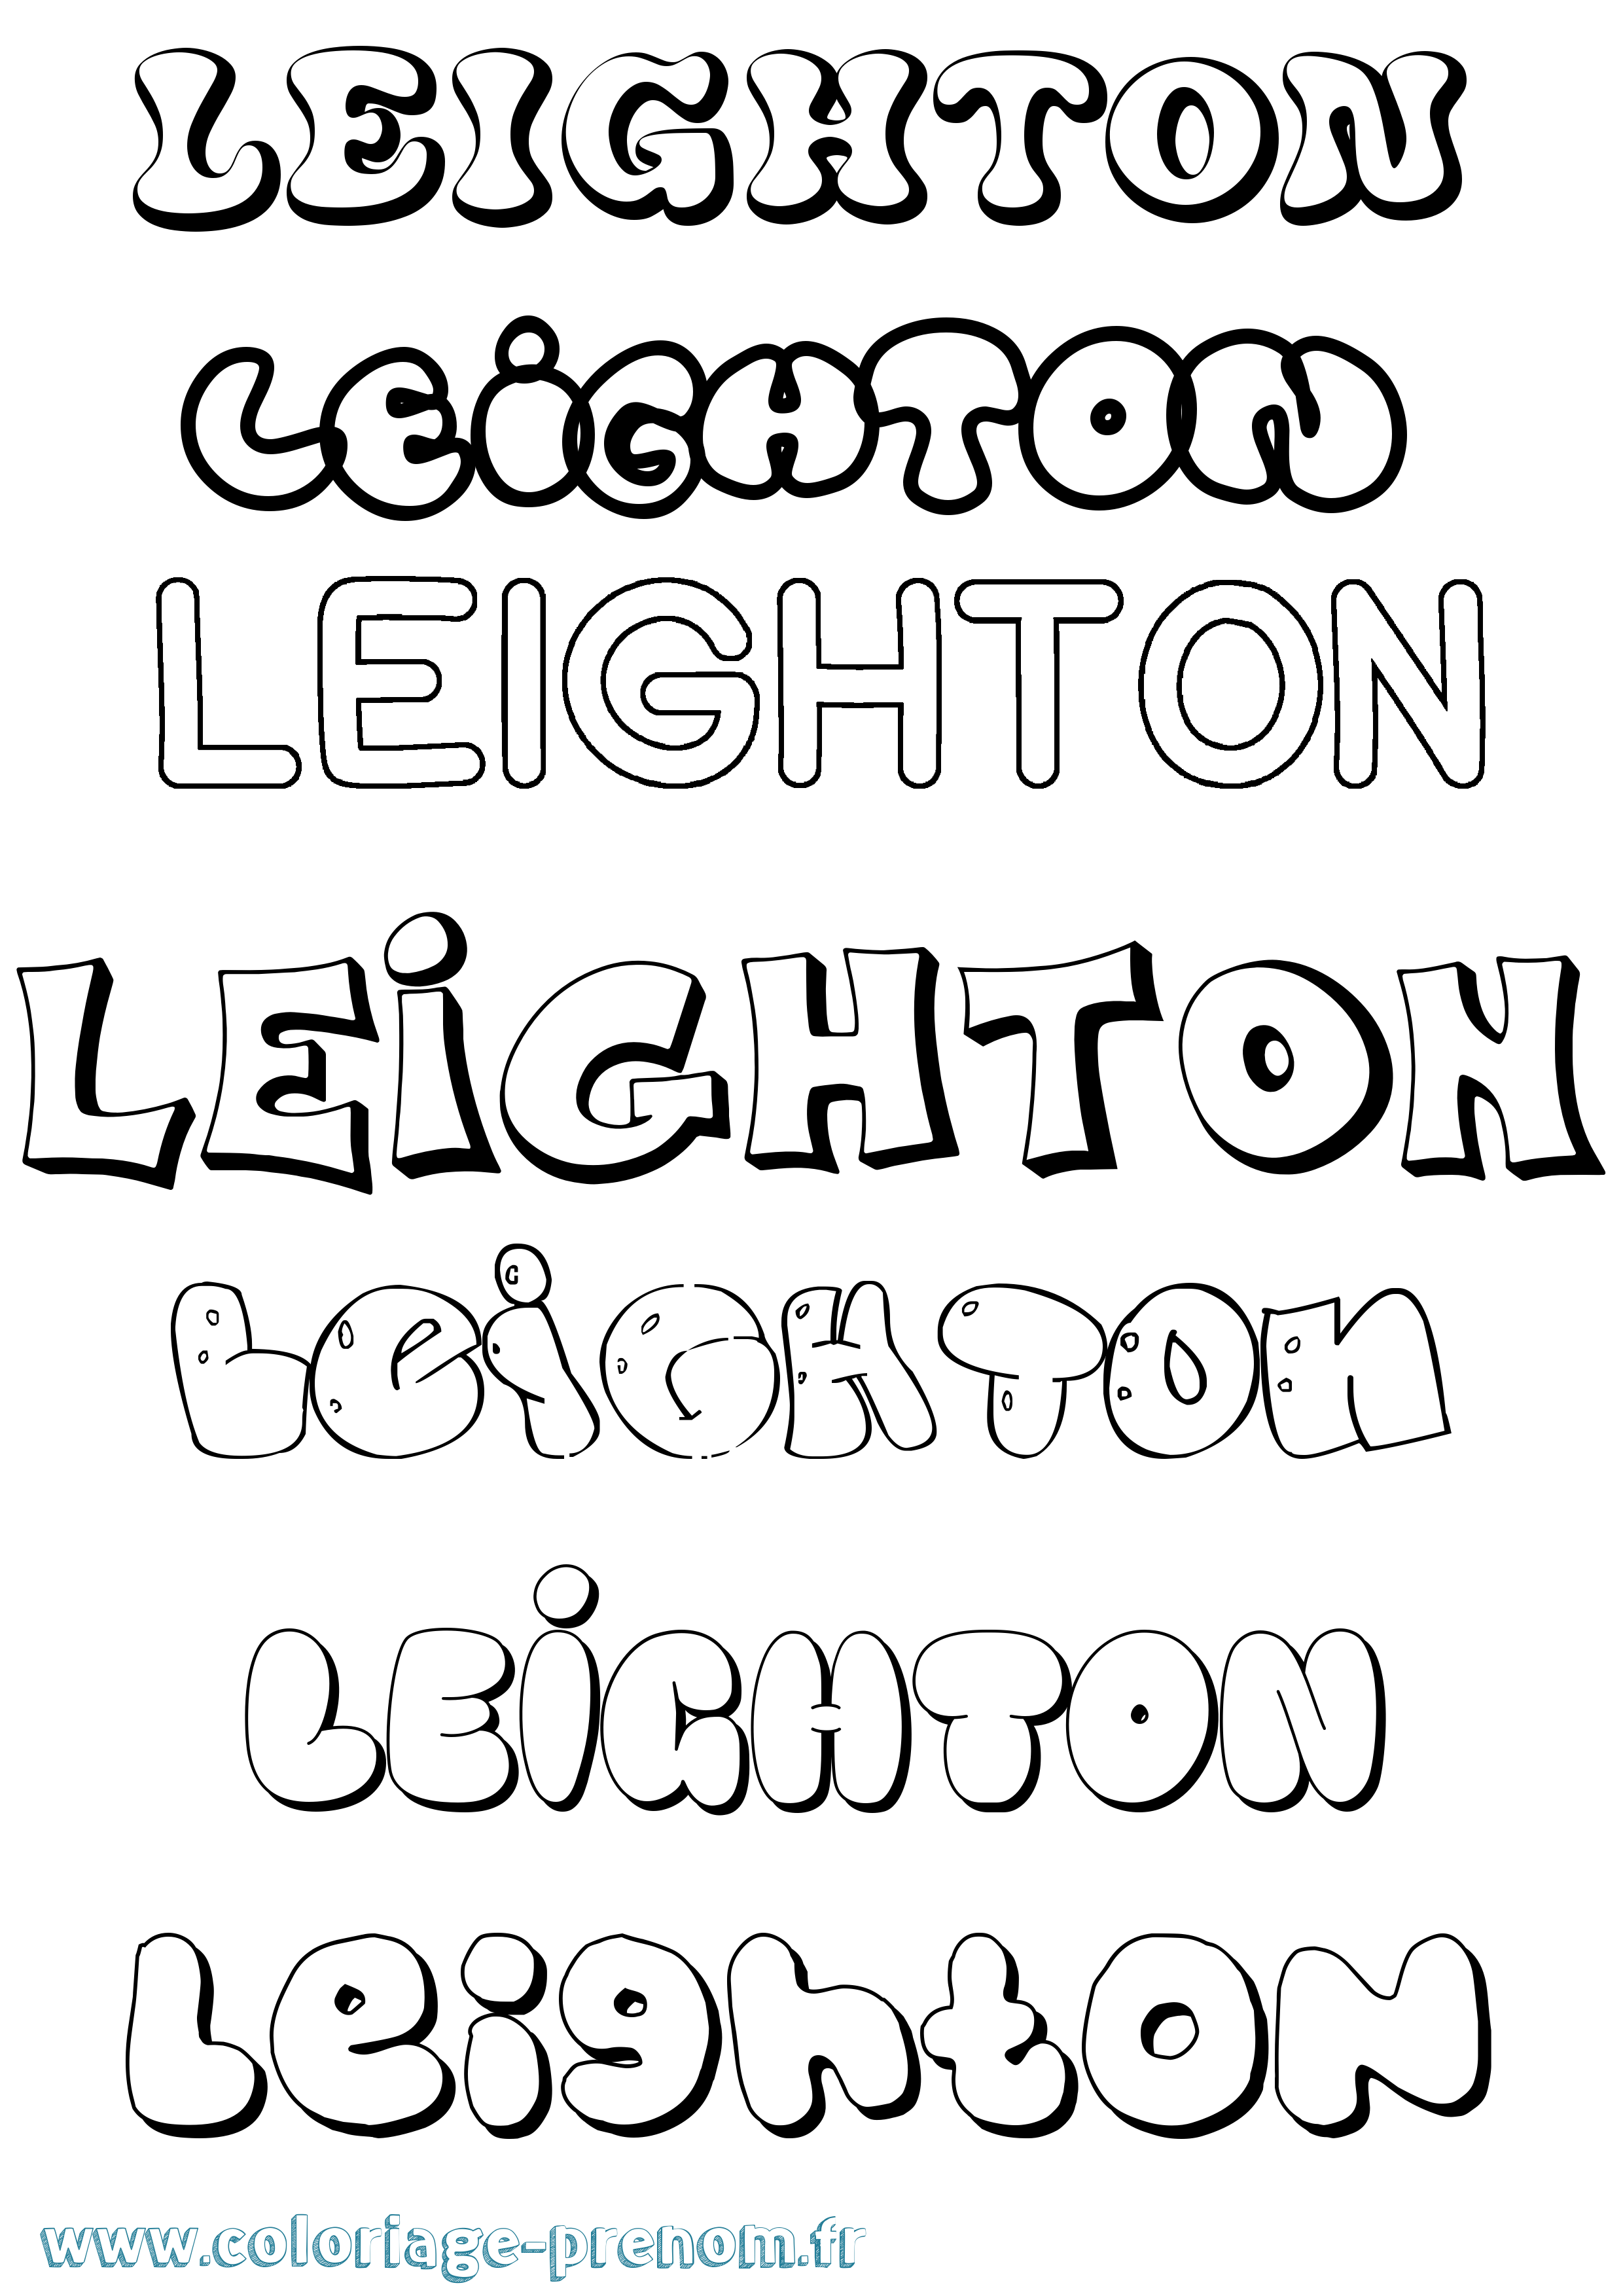 Coloriage prénom Leighton Bubble